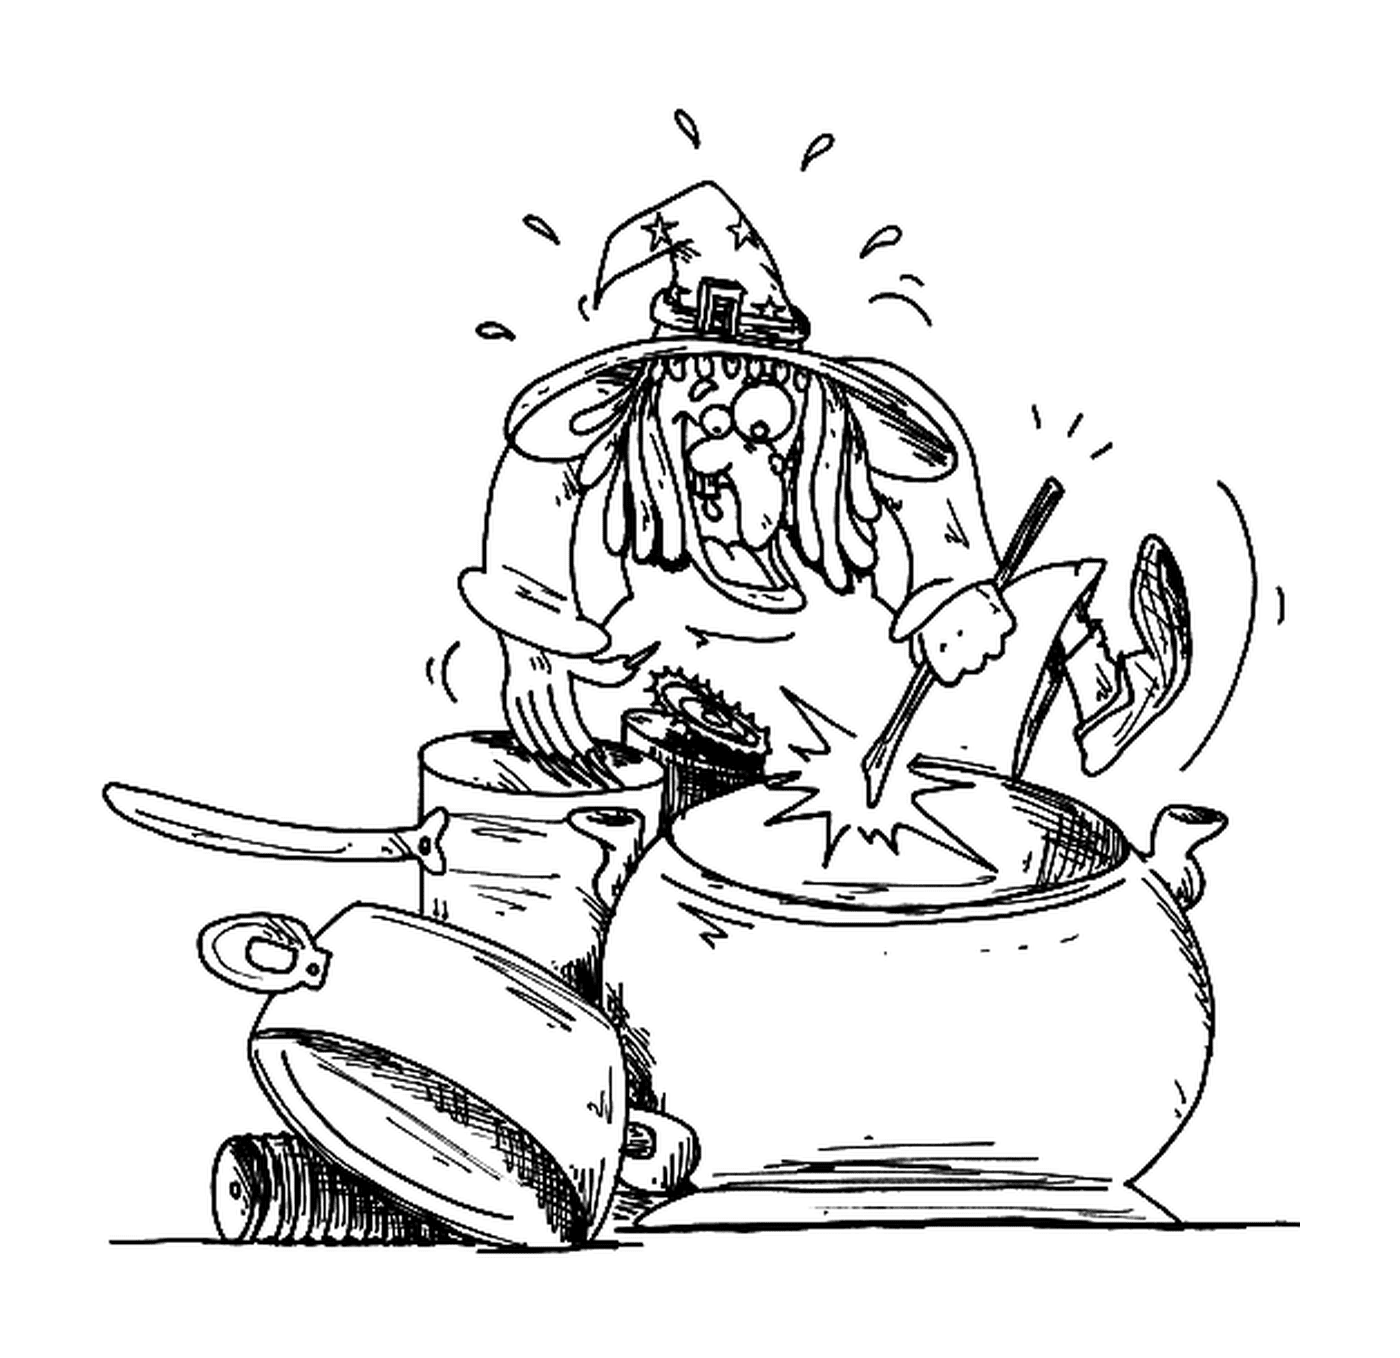  bruja cocinando en su olla 